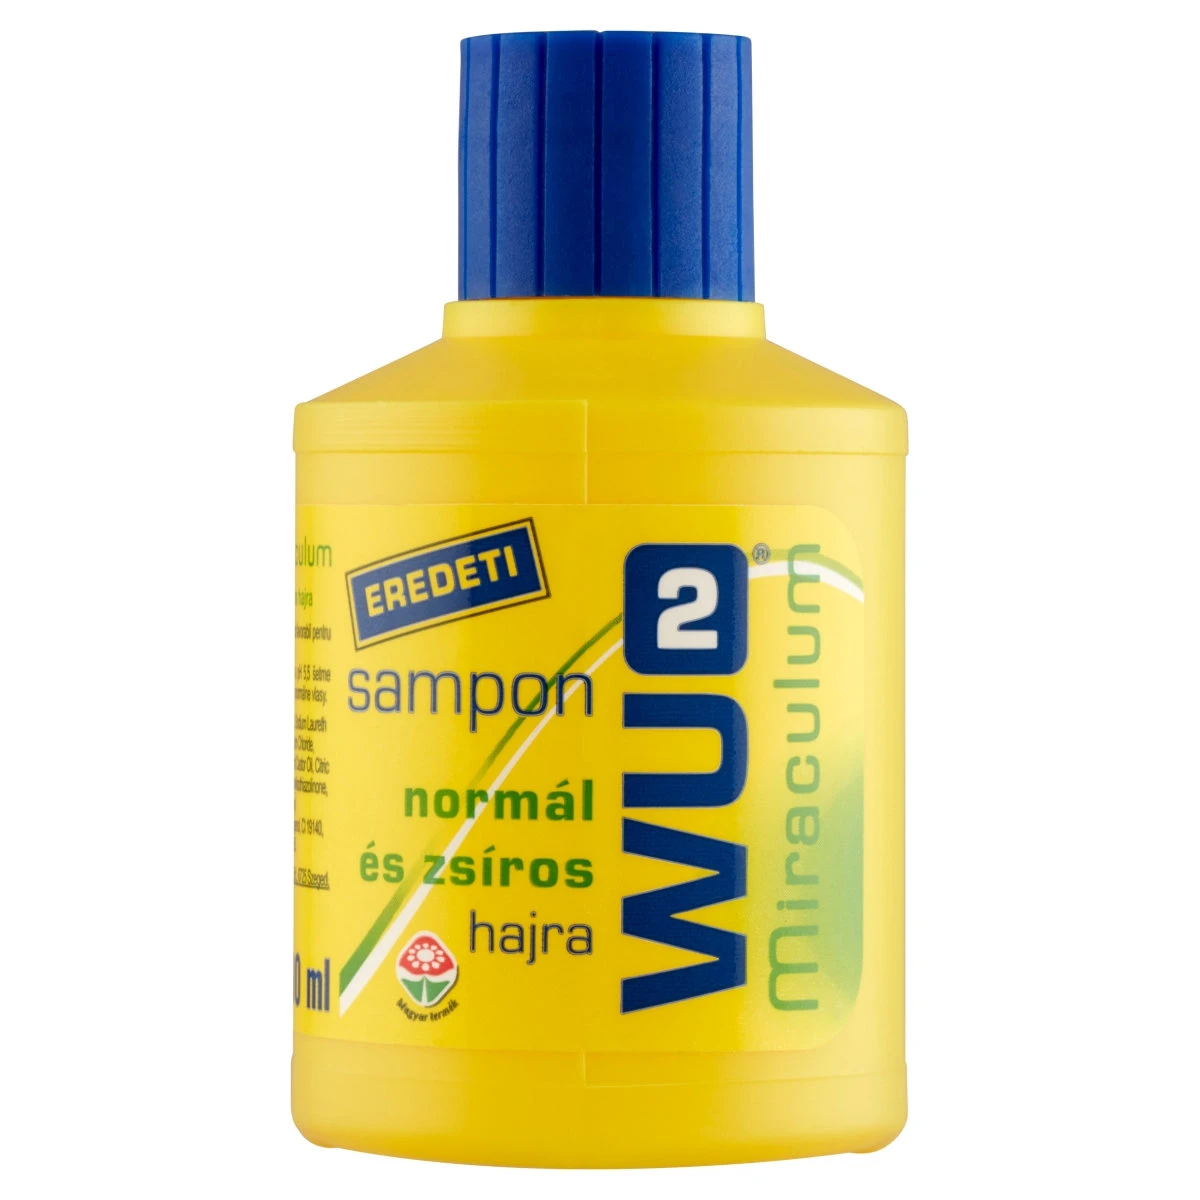 WU2 Miraculum sampon normál és zsíros hajra 100 ml